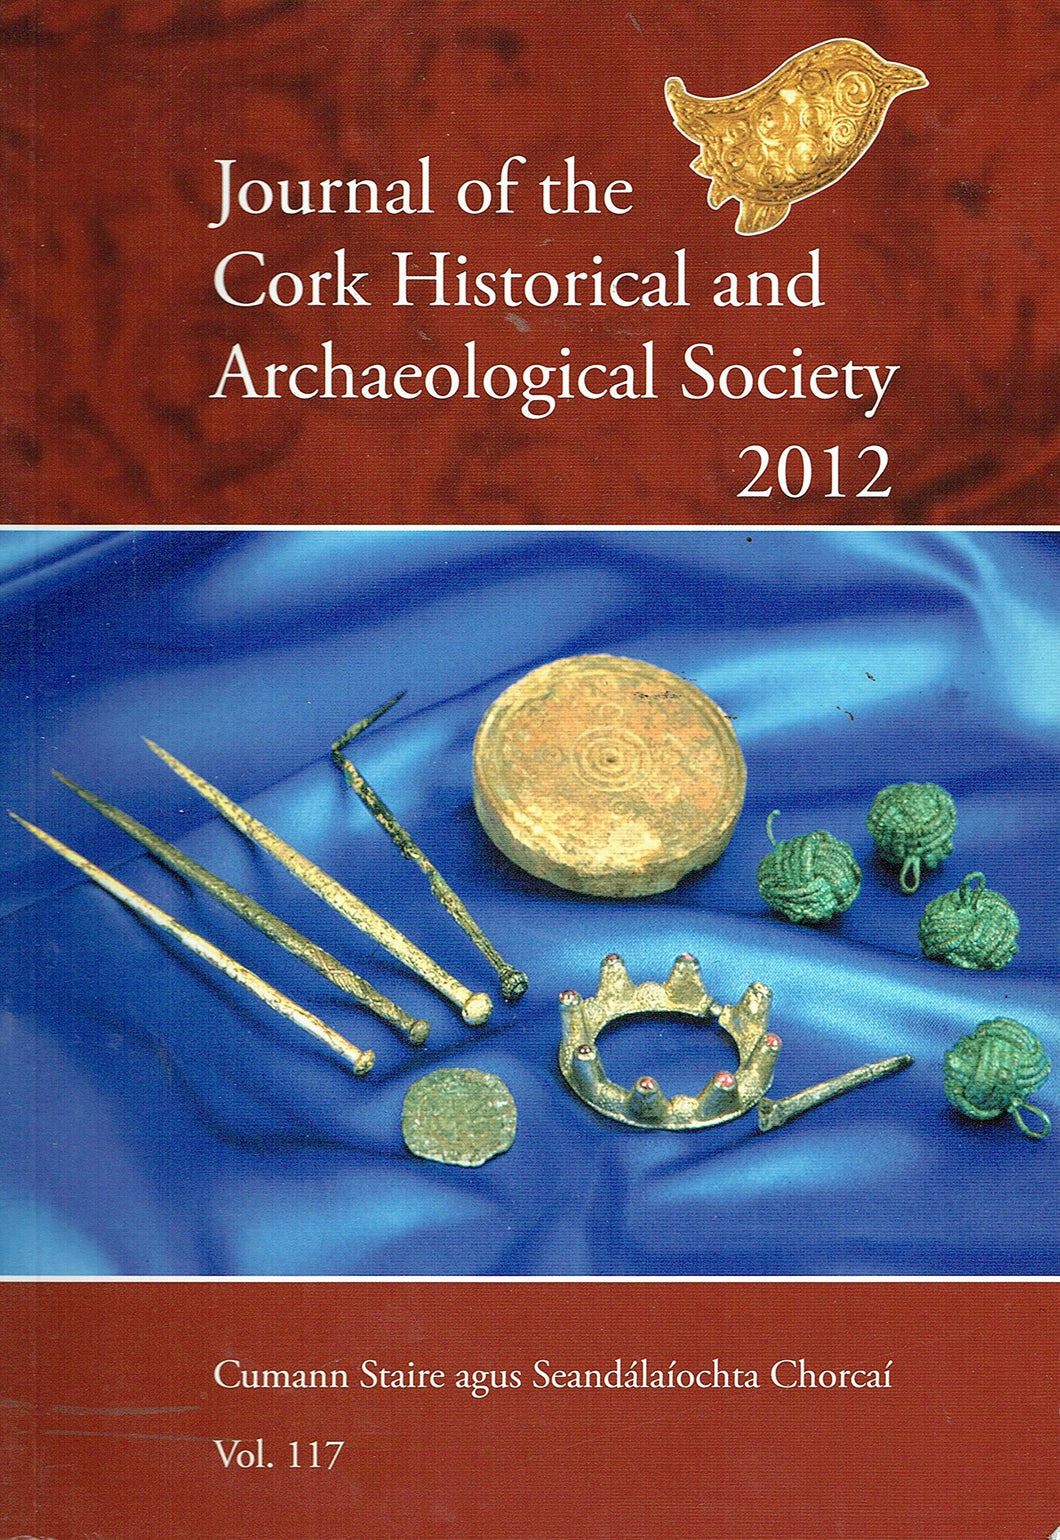 Journal of the Cork Historical and Archaeological Society 2012, Vol. 117 - Cumann Staire agus Seandálaíochta Chorcaí